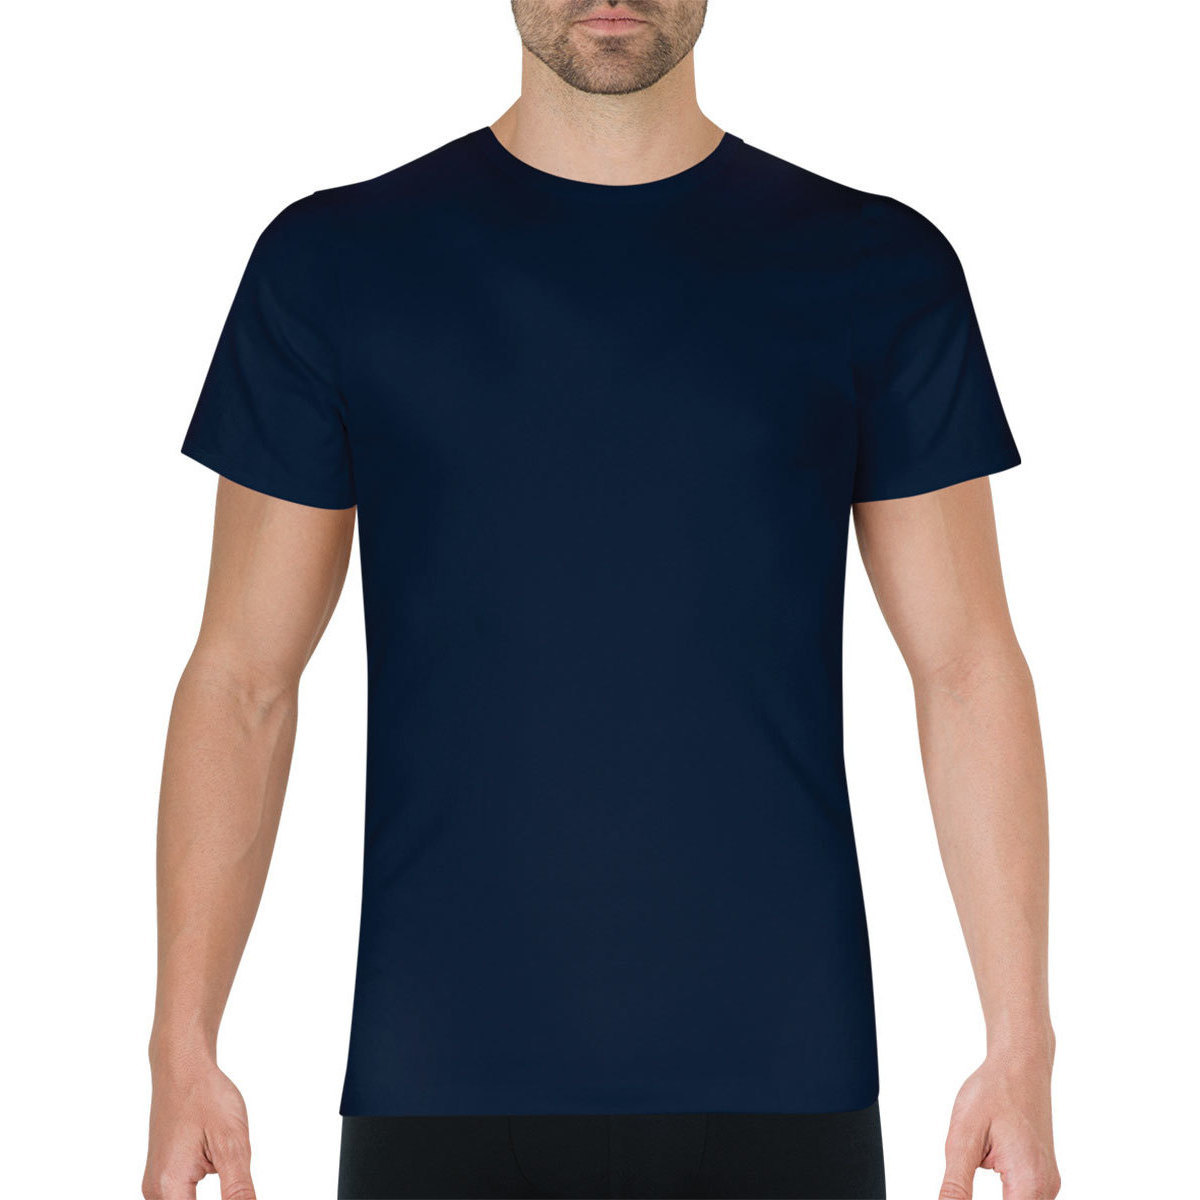 Vêtements Homme T-SHIRT MAXI PATCH TEDDY Tee-shirt col rond Pur coton Premium Bleu